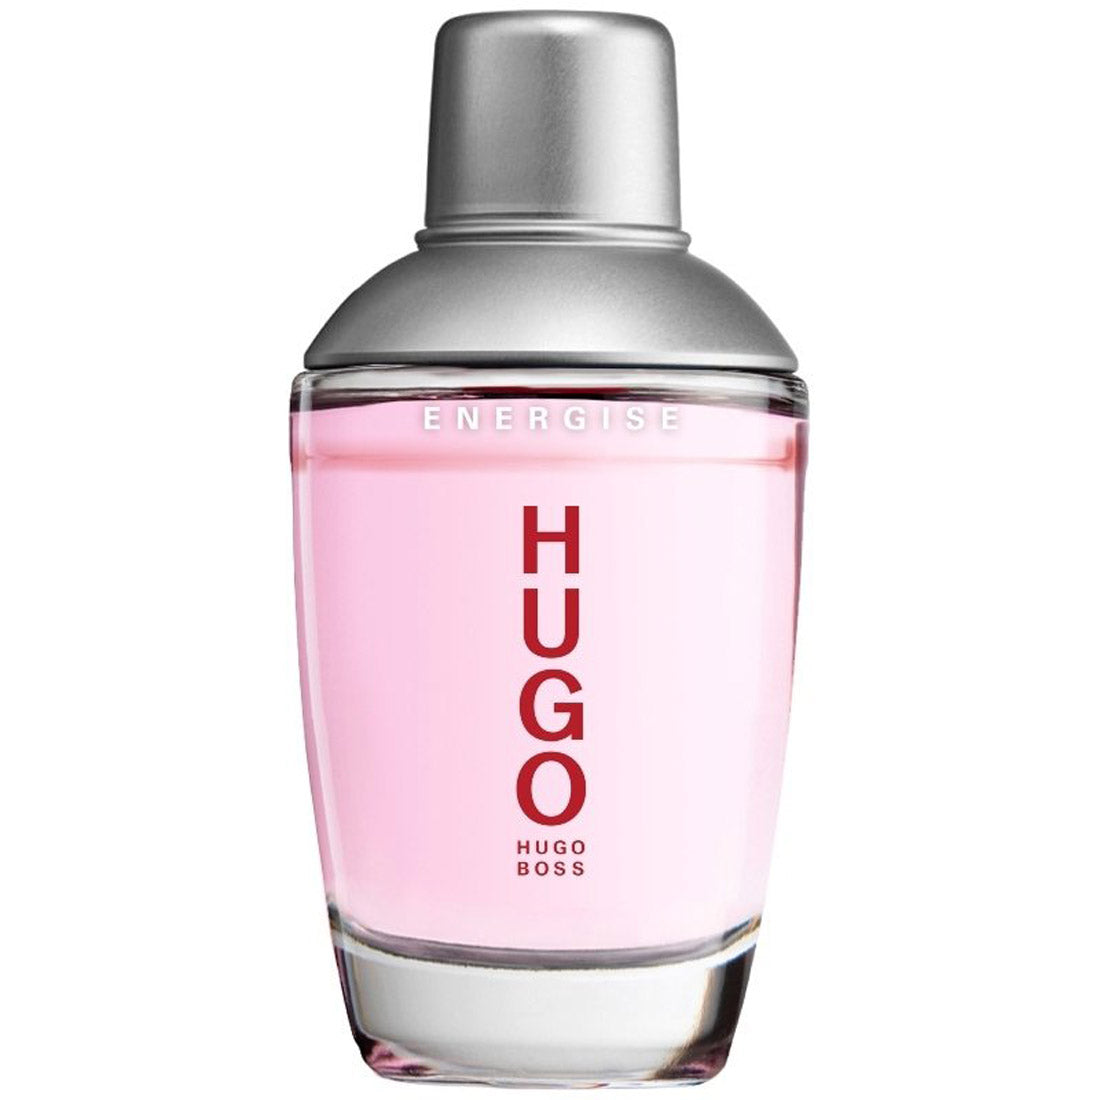 Hugo Boss HUGO Energise Eau De Toilette For Men 